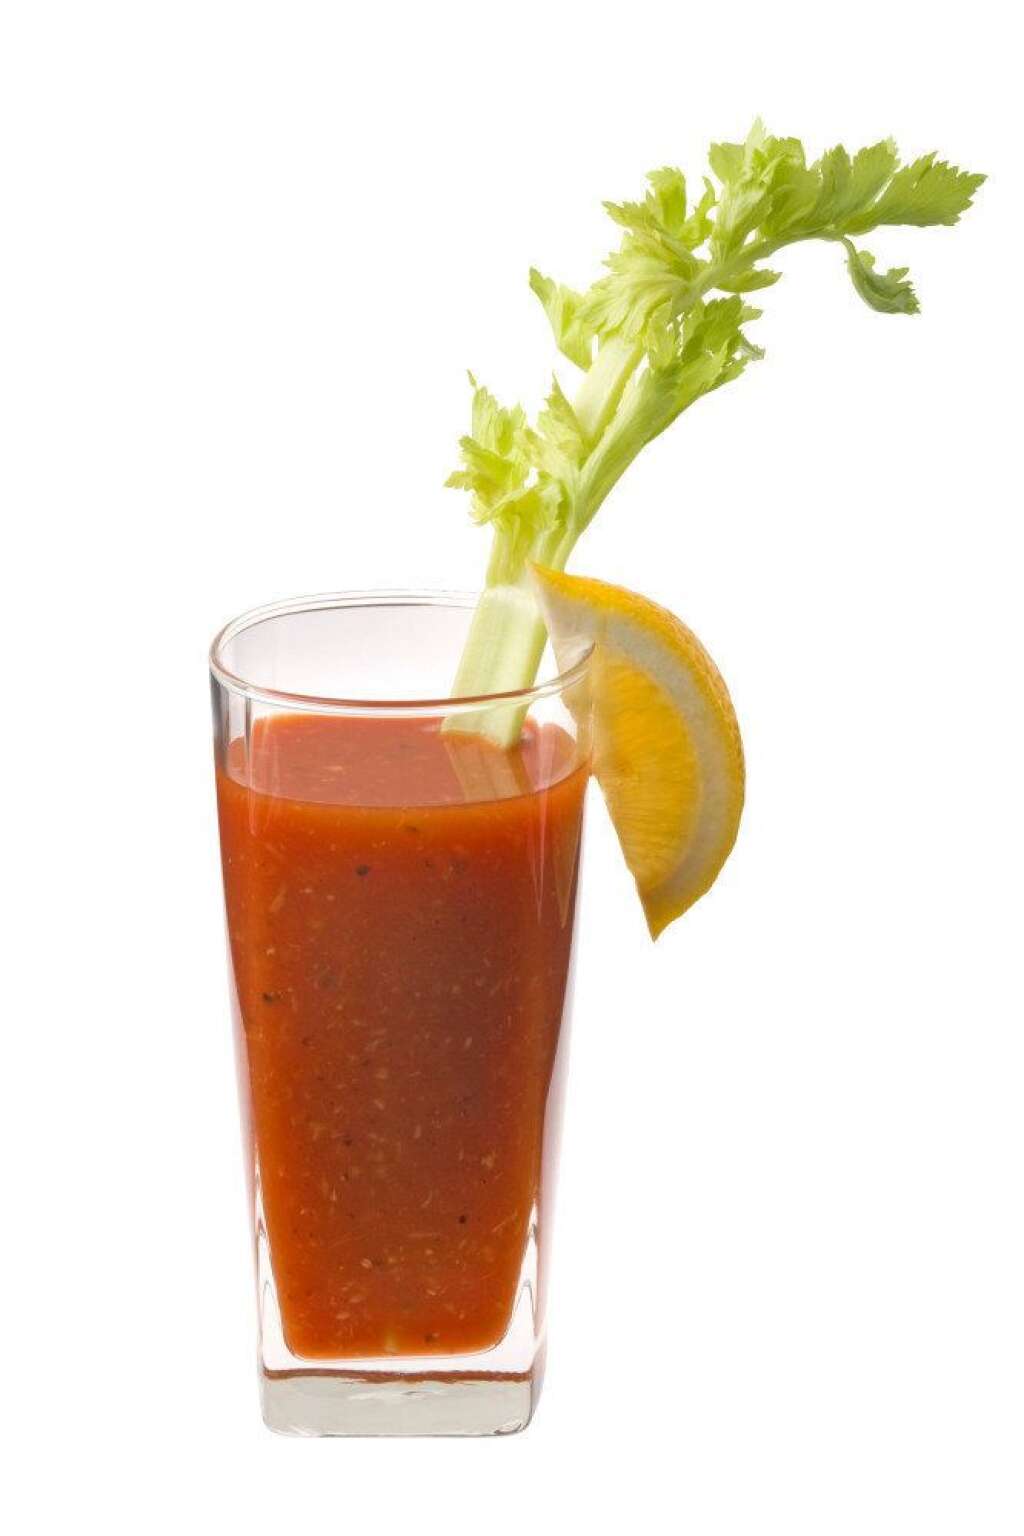 4. Bloody Mary: 100 calories - Peu calorique, le Bloody Mary se compose de jus de tomate, vodka et d'autres ingrédients optionnels tels que poivre, céleri, sauce Worcestershire ou jus de citron. La version classique ne contient que 100 calories.